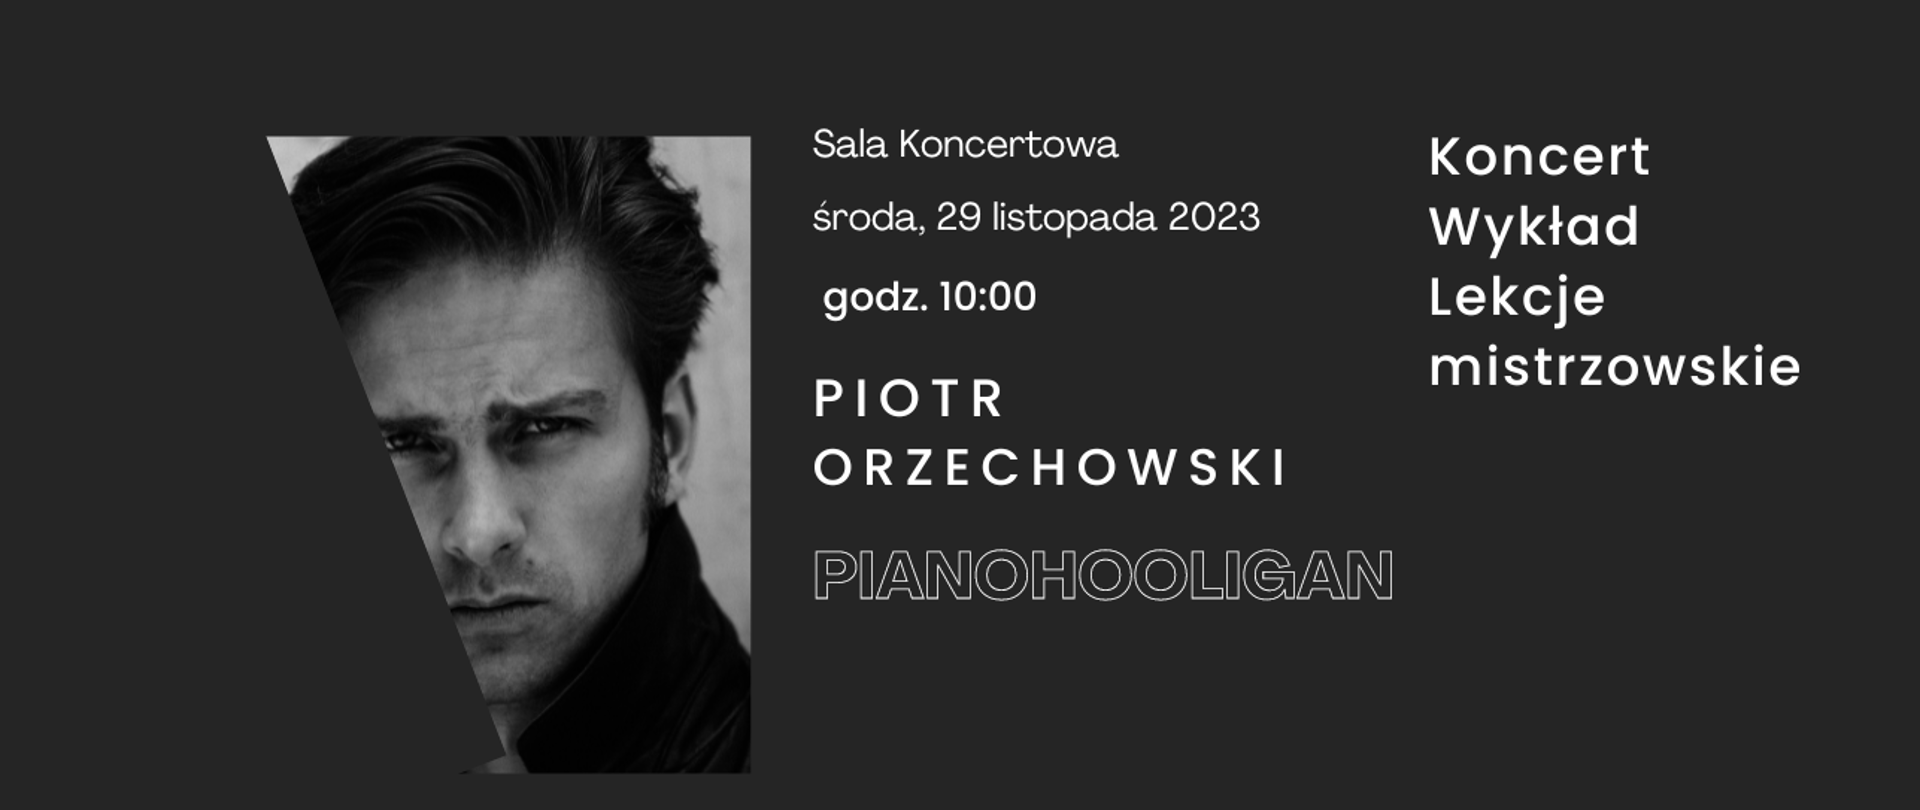 Baner na warsztaty Piotra Orzechowskiego (Pianohooligan) na czarnym tle zdjęcie wykonawcy ukośnie przycięte, data 29 XI 2023 godz. 10:00. 